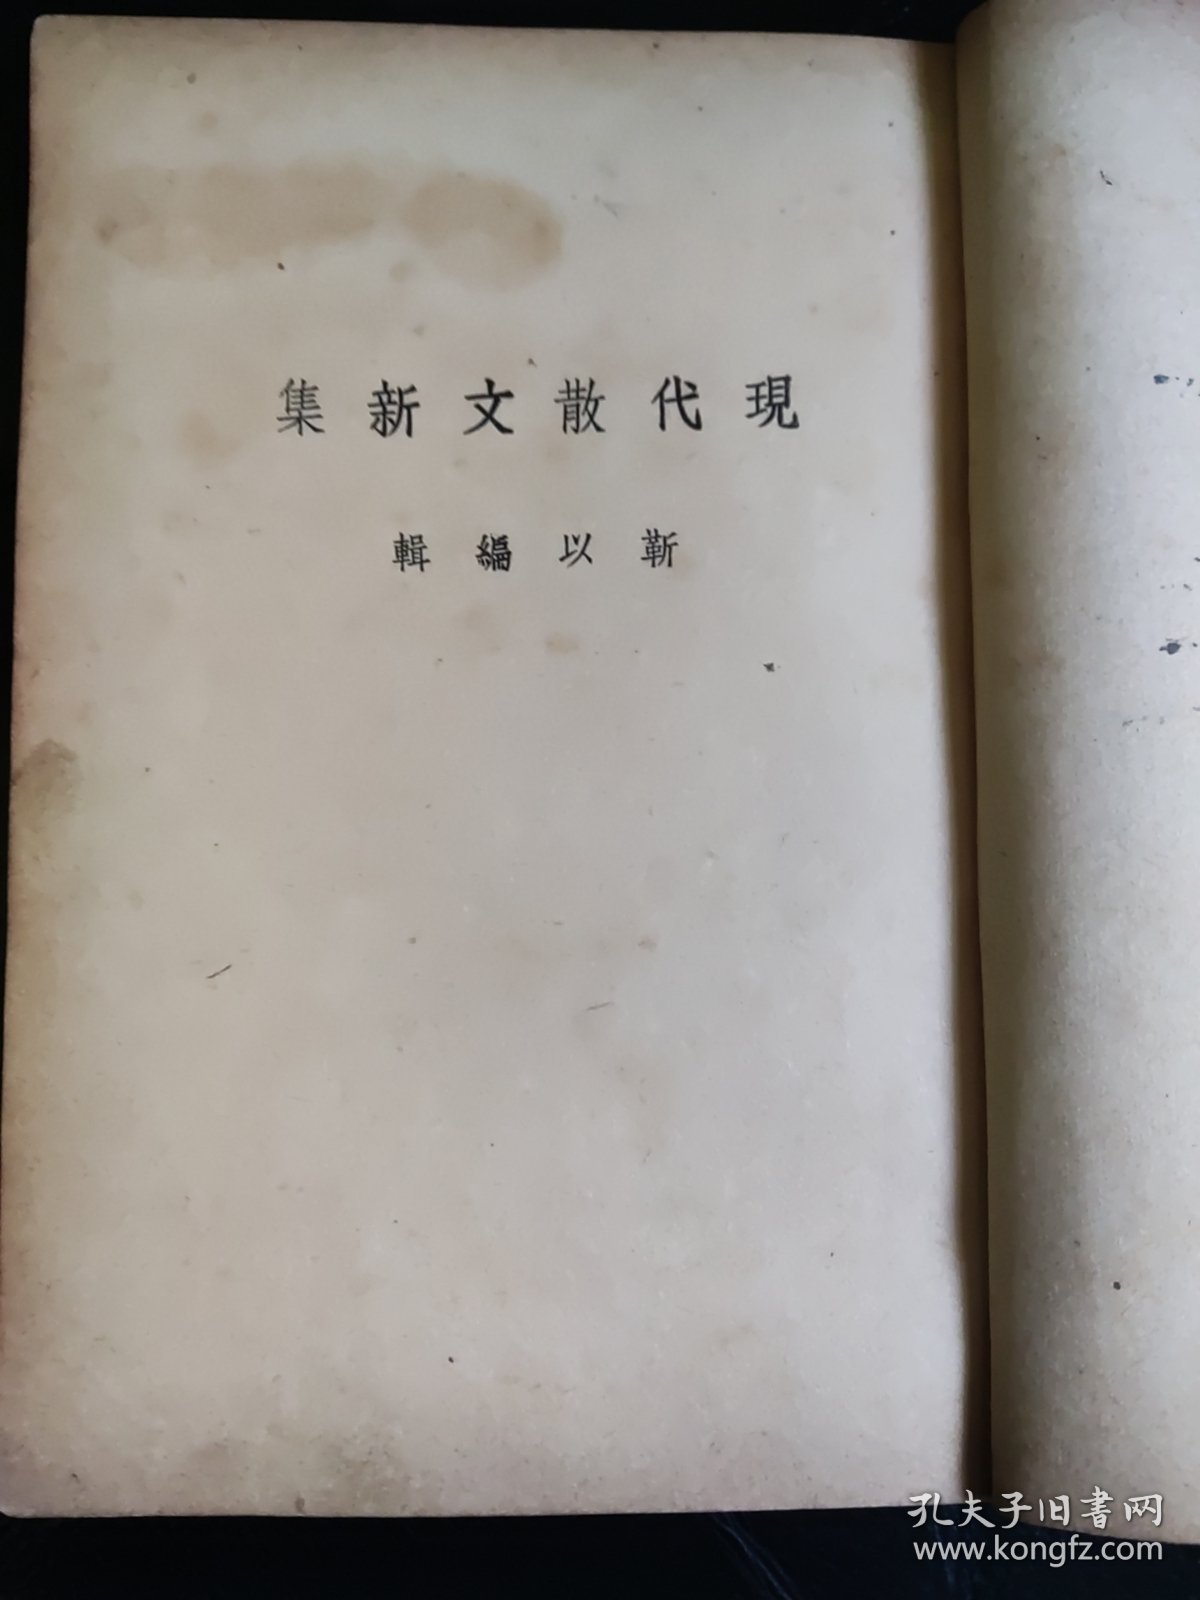 何其芳 《还乡日记》 1939年初版 ，馆藏图书。本书是1949年1月出版《还乡杂记》的最早原版本。本书是本网罕见初版本。